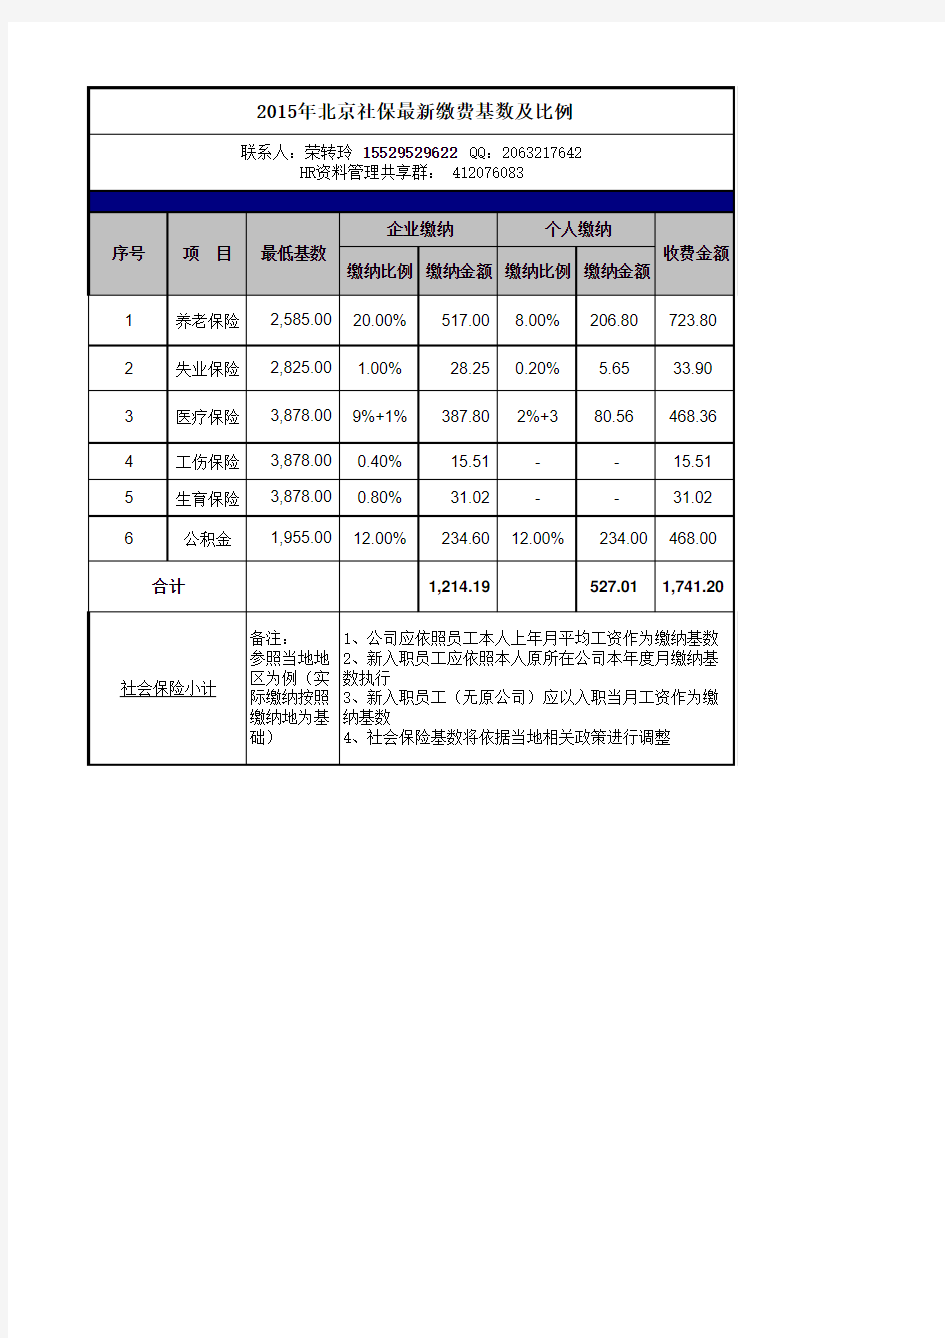 2015北京市社保缴费明细表(基数及比例)